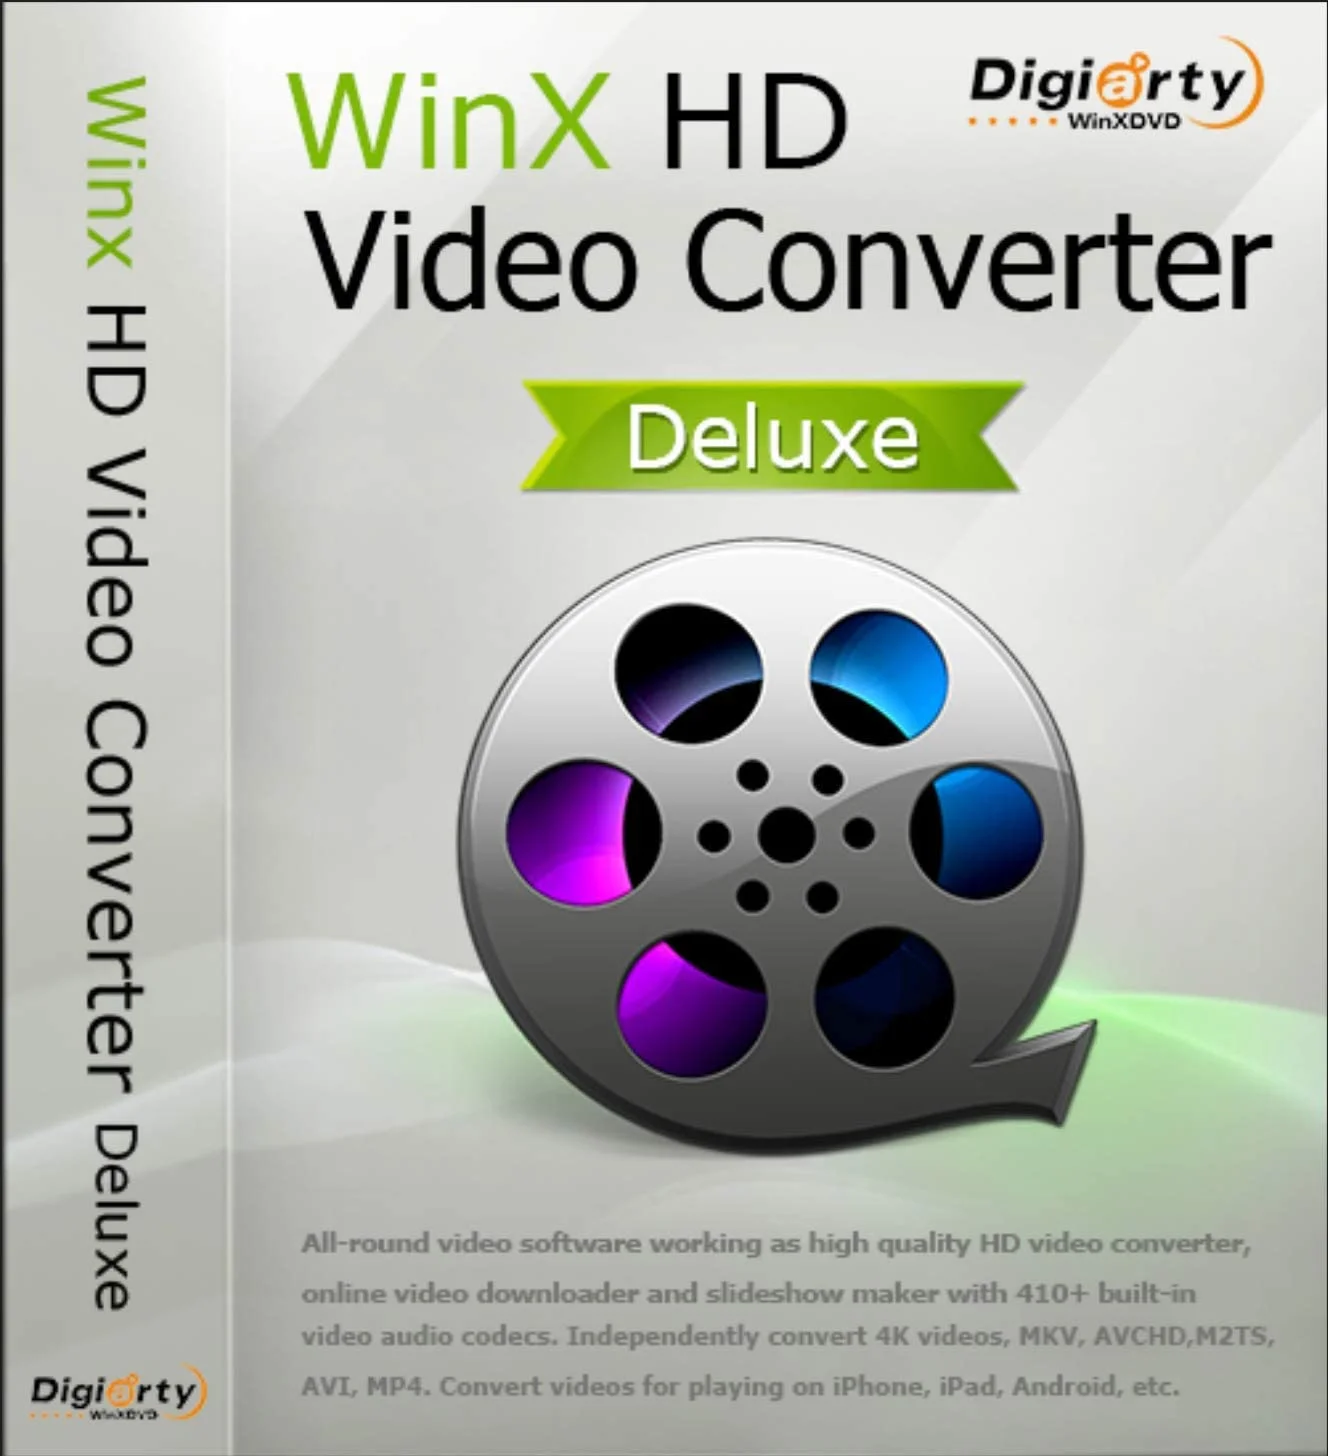 Download WinX HD Video Converter Deluxe Premium Software